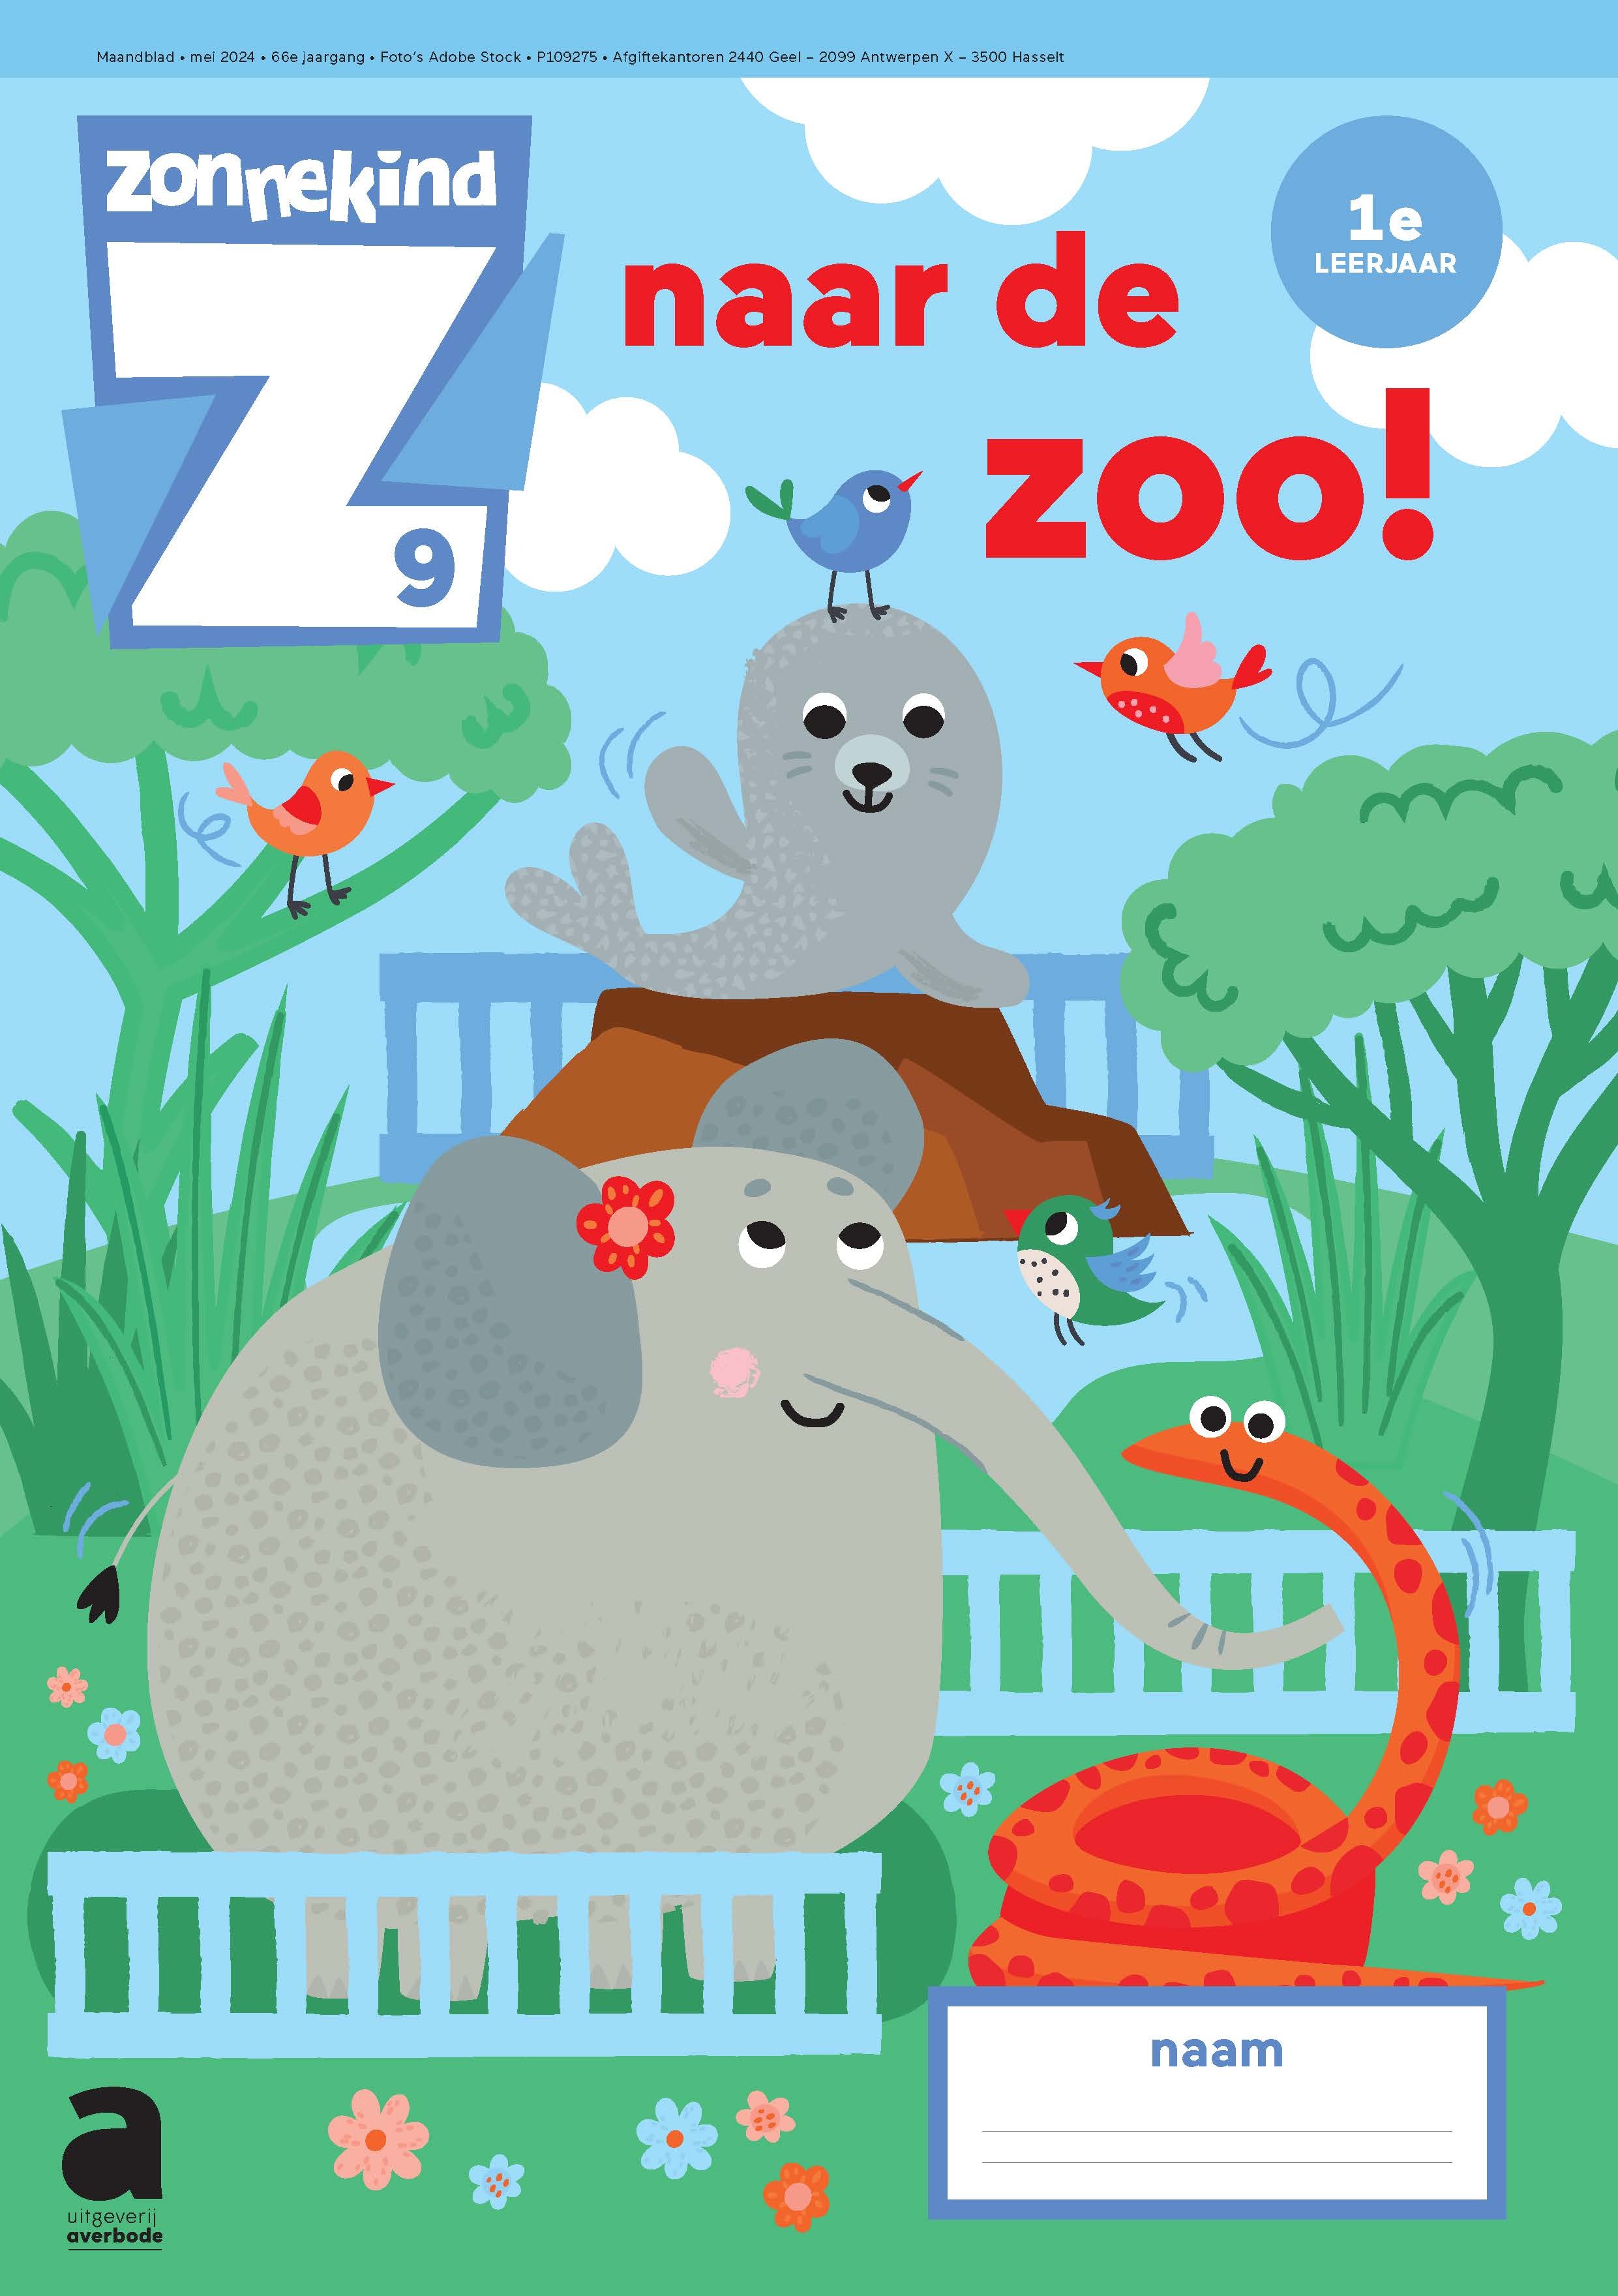 Zonnekind 9 - Naar de zoo 1